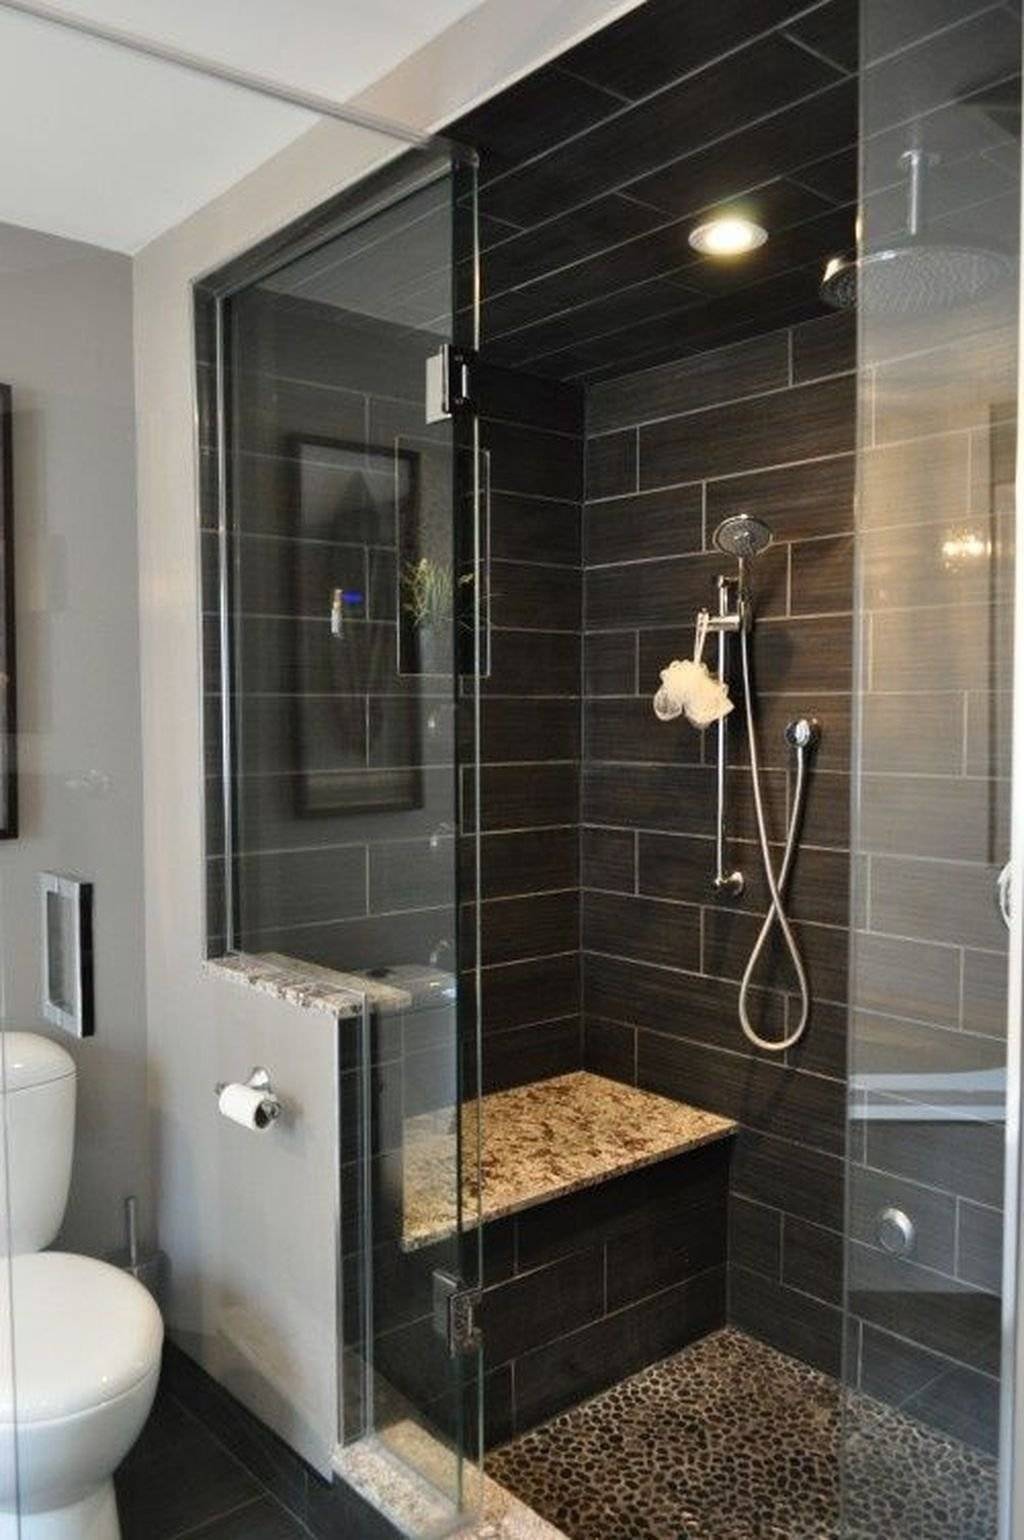 Ванная комната с душевой из плитки: дизайн интерьера ванной с душевой кабиной, особенности устройства, плюсы и минусыдекор и дизайн интерьера